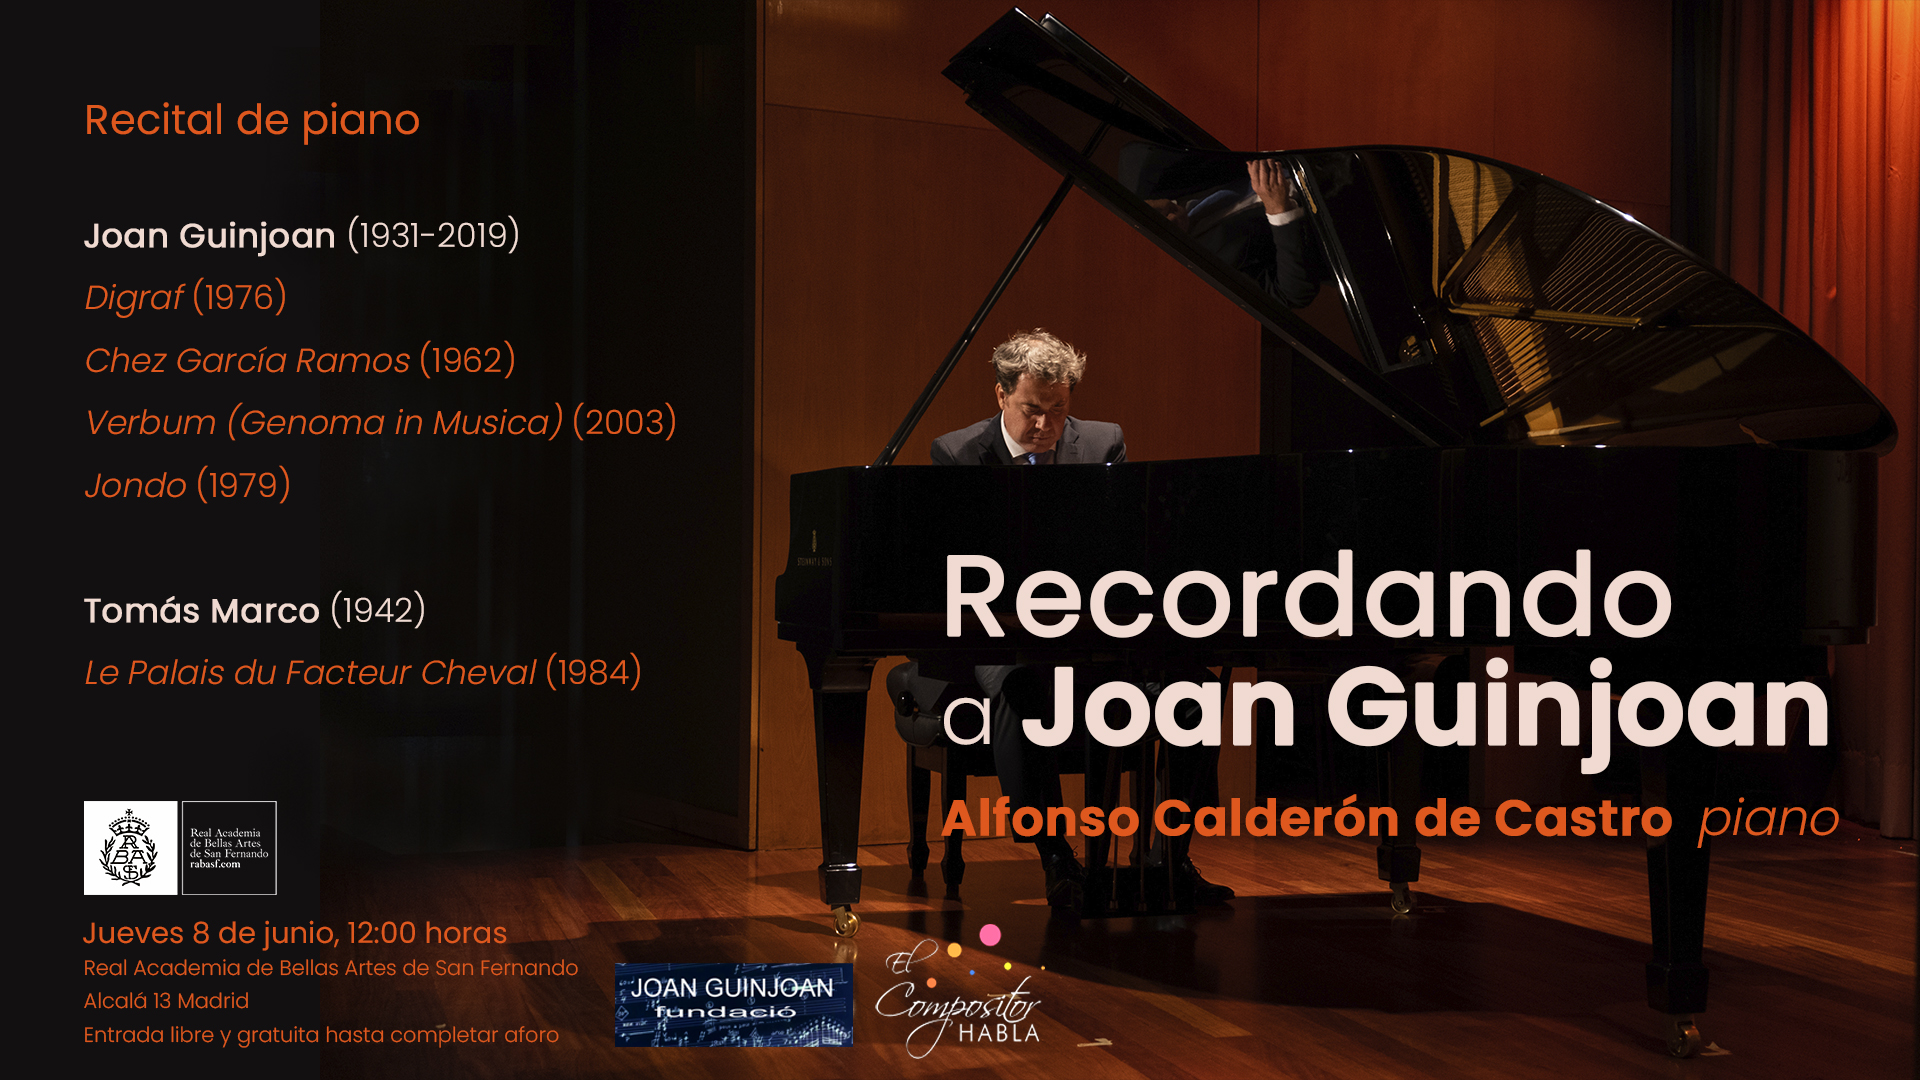 Recital de piano Recordant Joan Guinjoan a Madrid